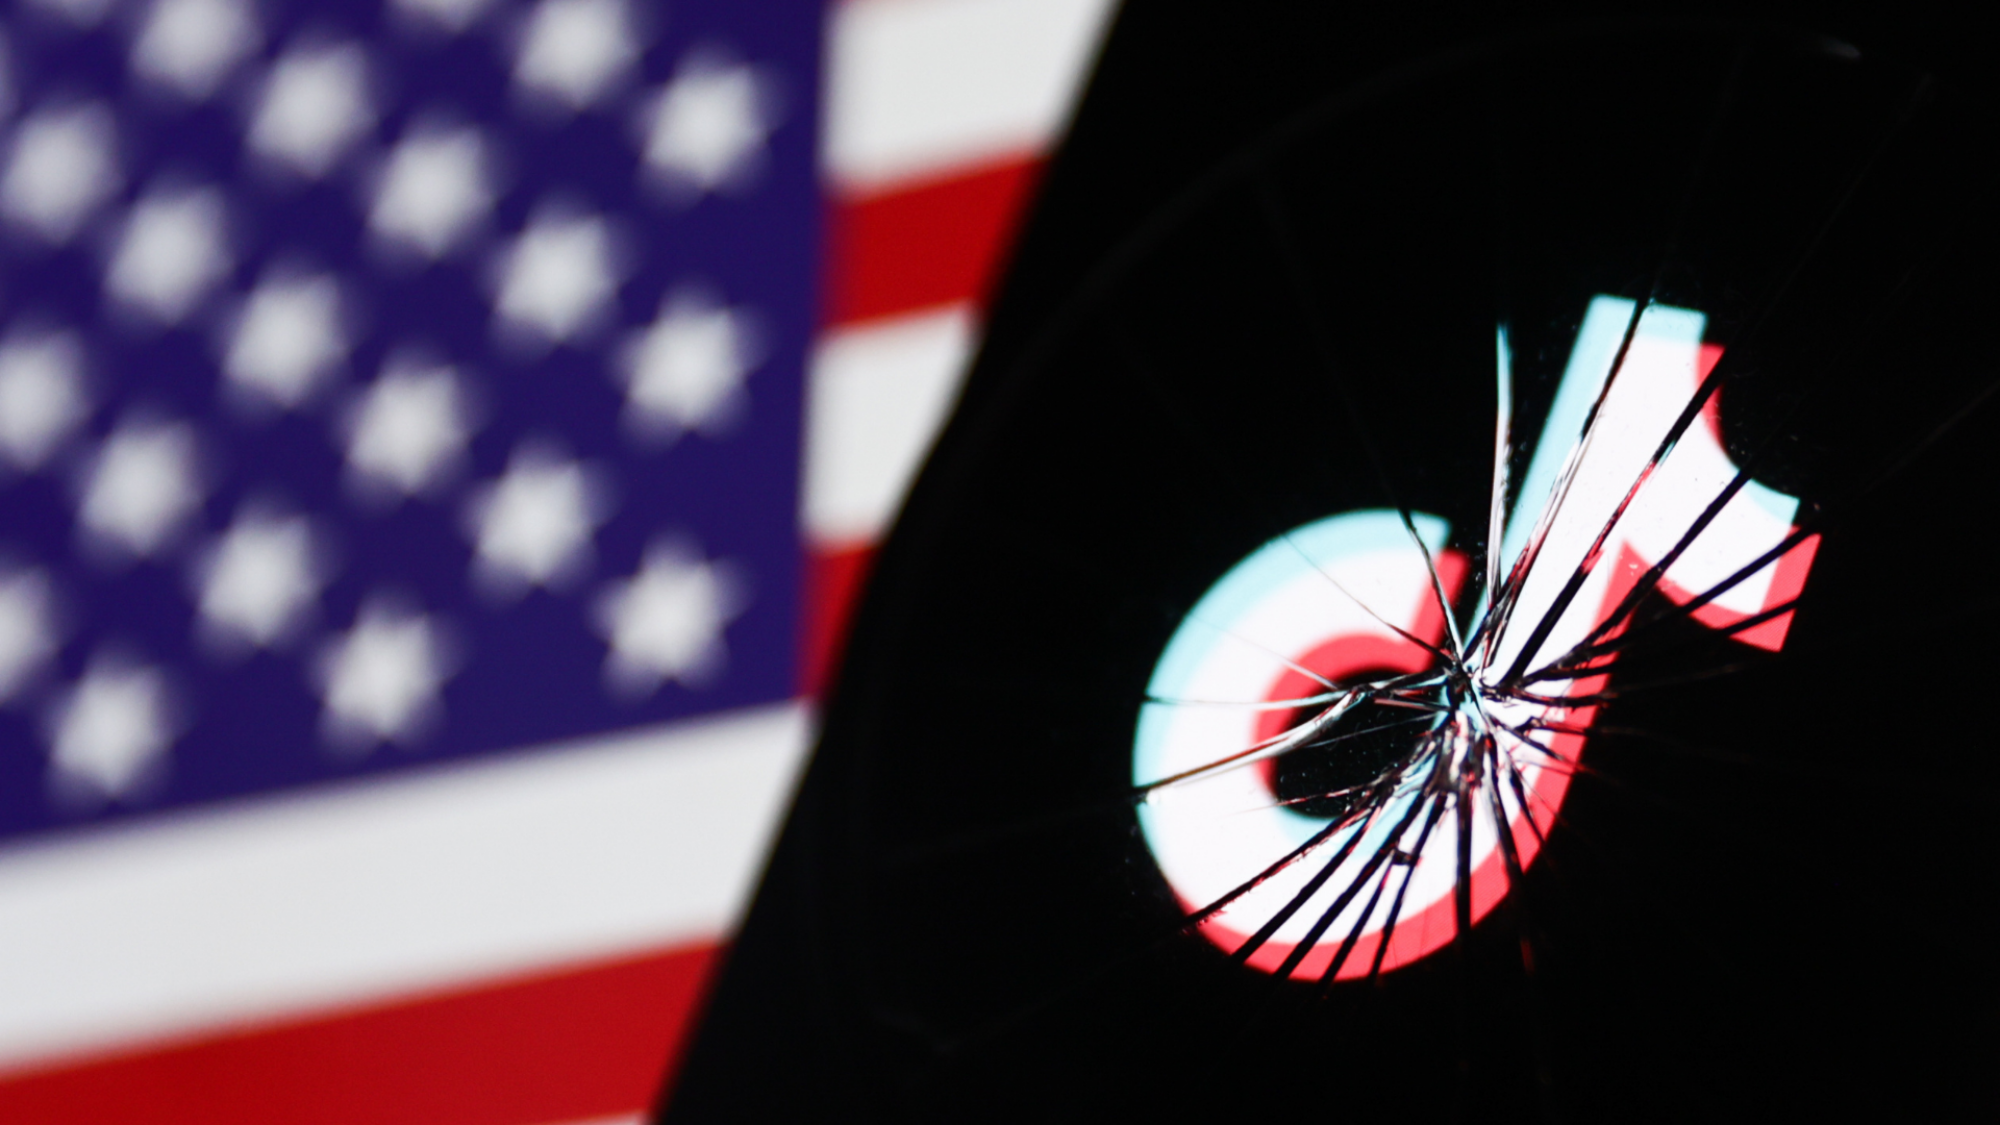 Le logo TikTok sur un écran de téléphone portable brisé, derrière lequel est visible le drapeau américain.